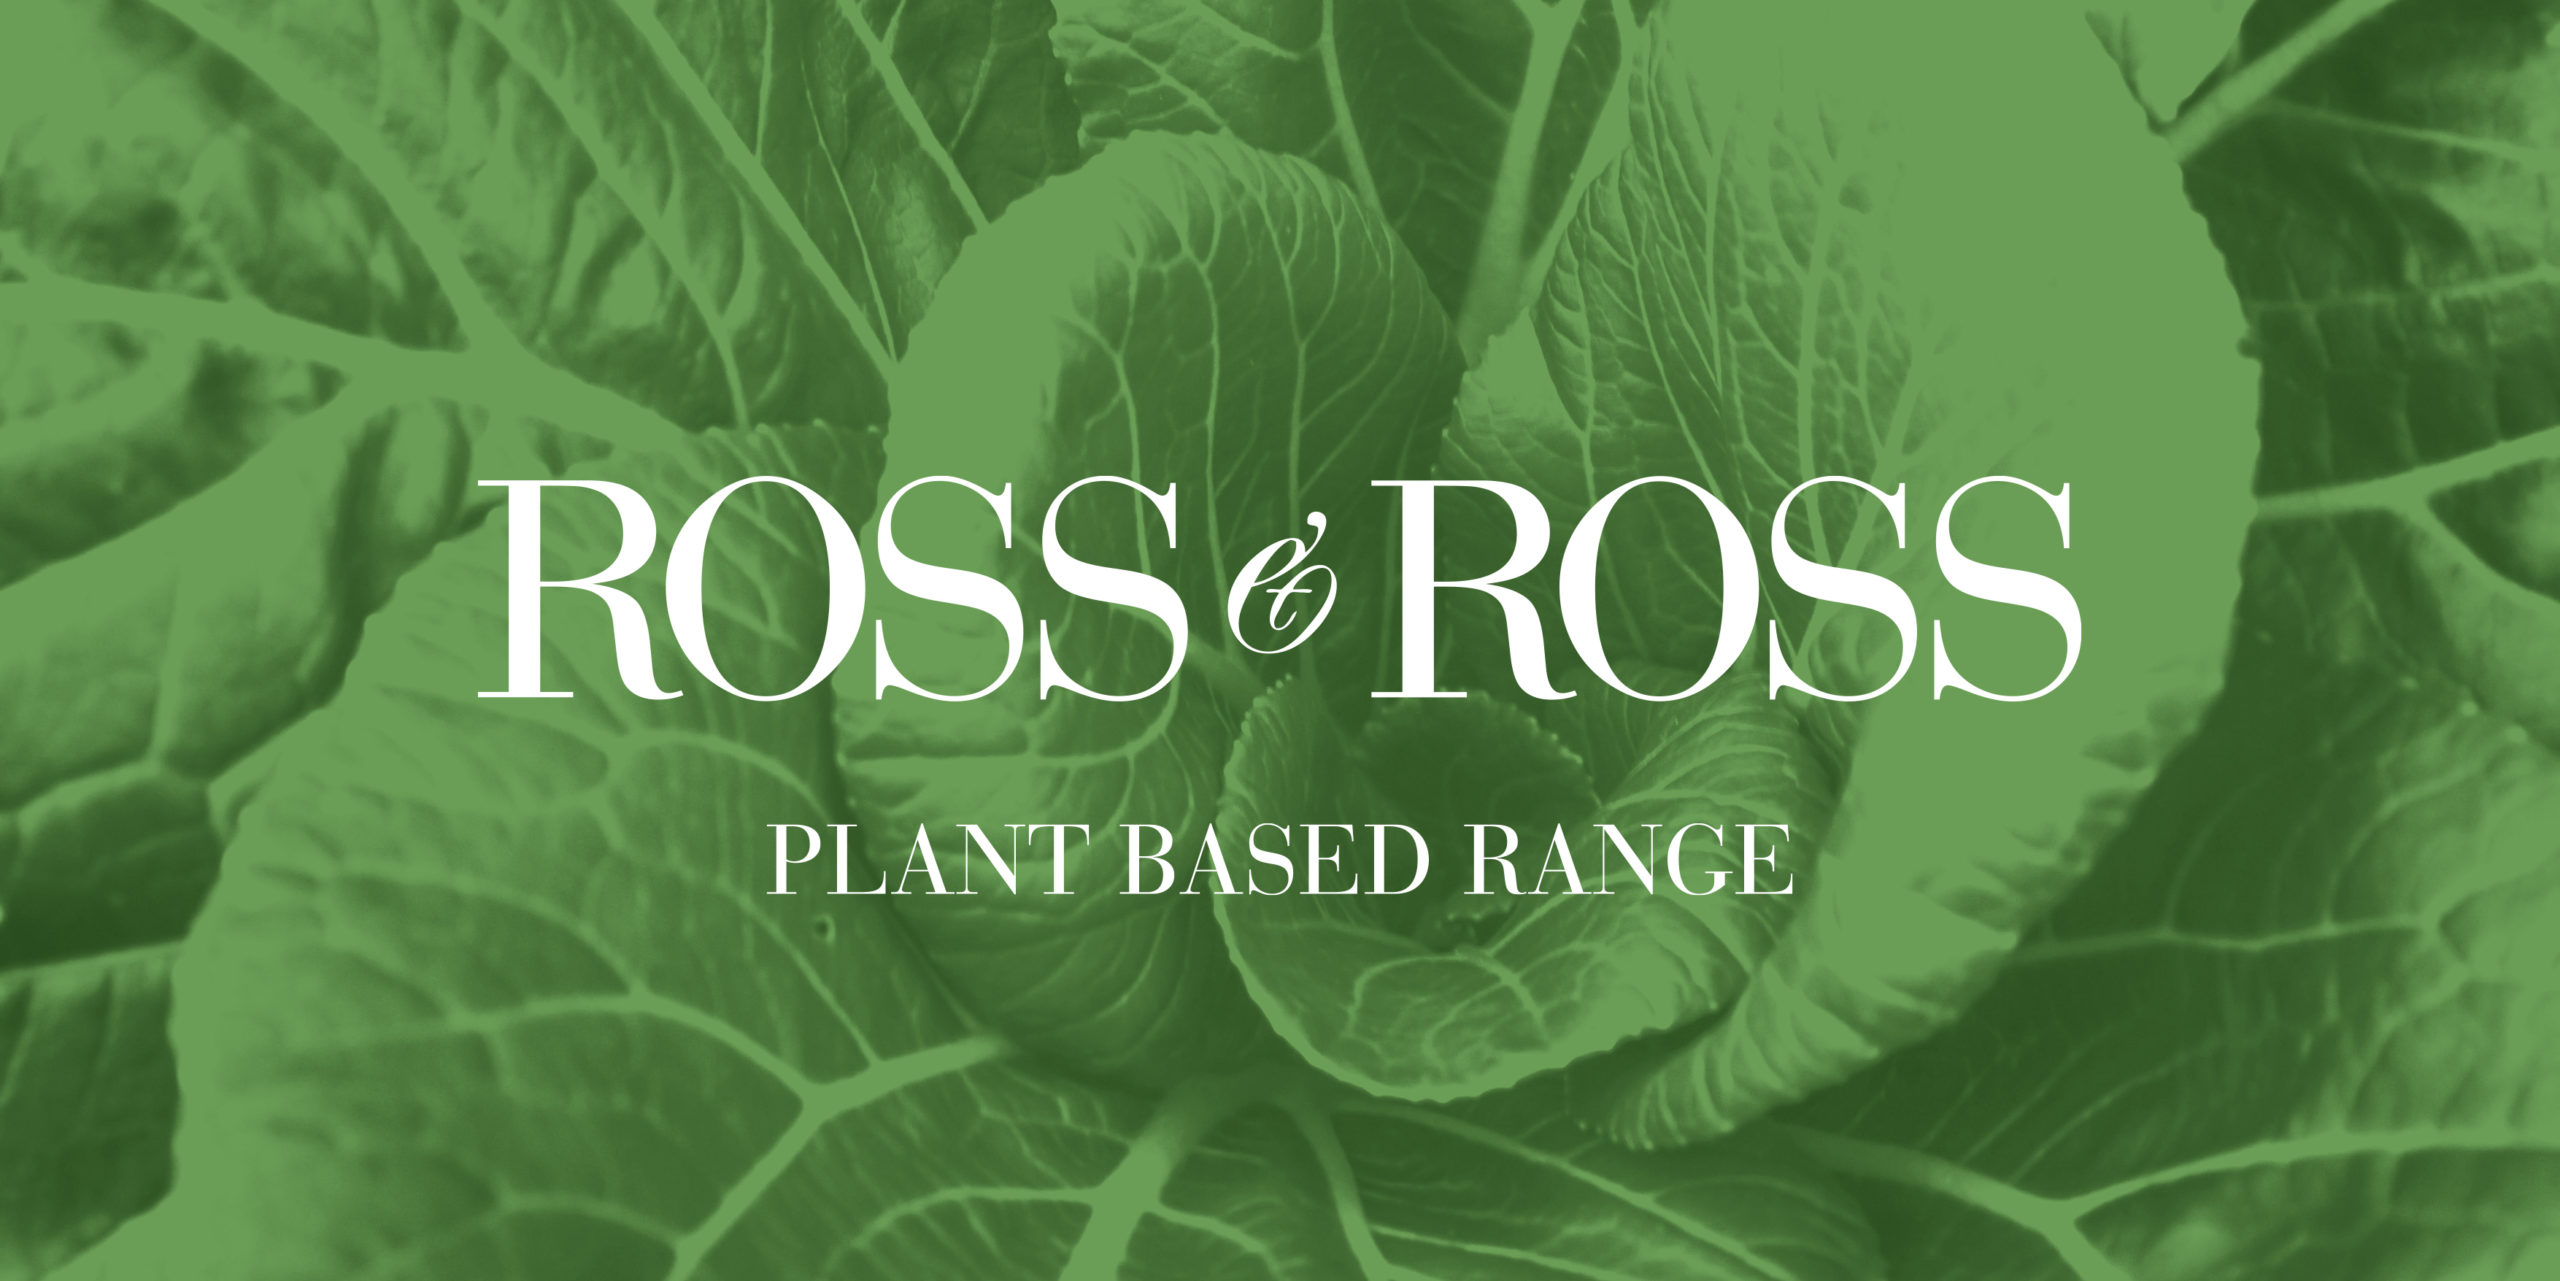 Ross & Ross Vegan Food Branding by Toast Food